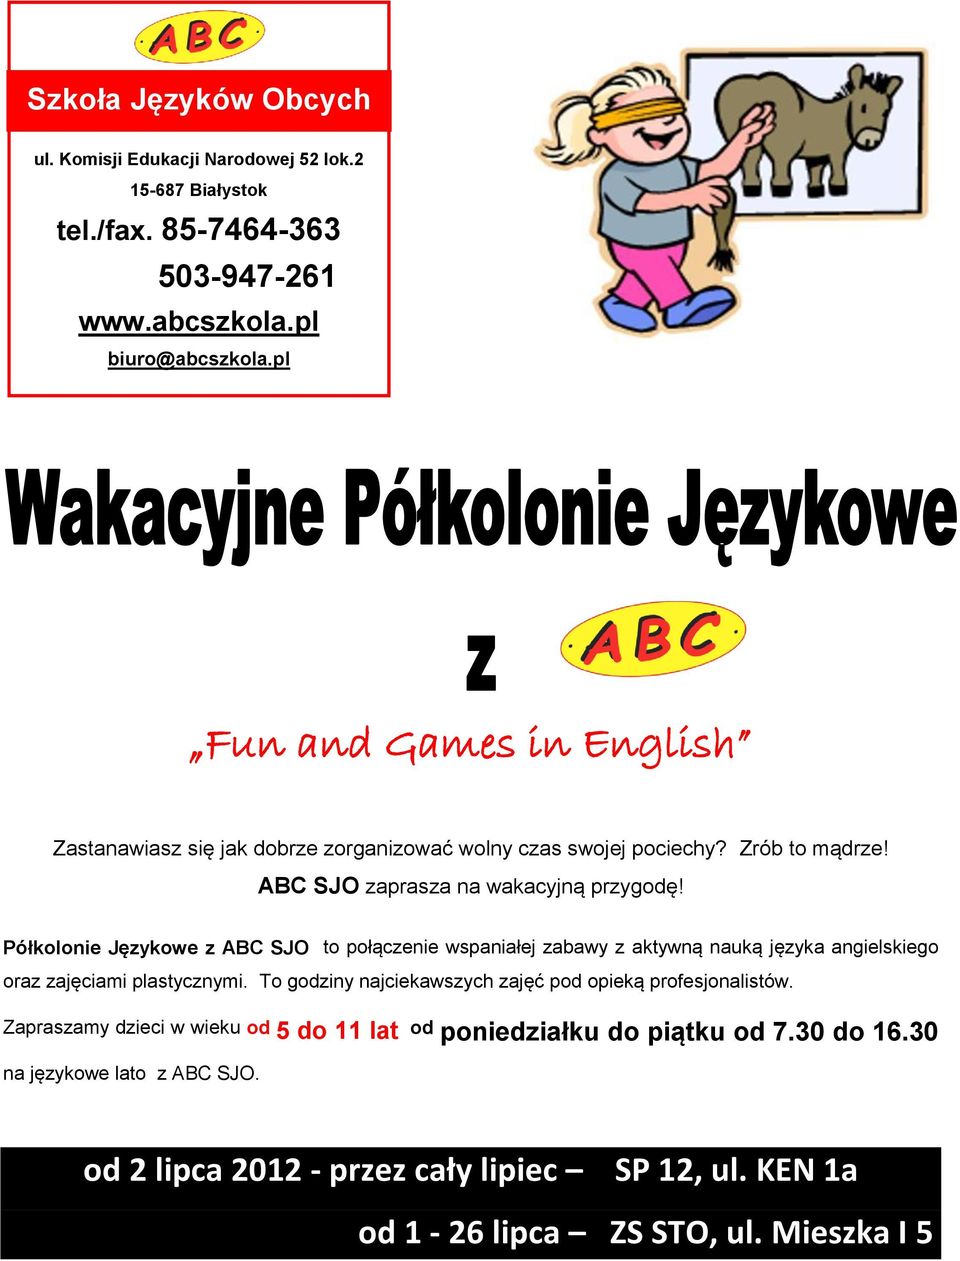 Półkolonie Językowe z ABC SJO to połączenie wspaniałej zabawy z aktywną nauką języka angielskiego oraz zajęciami plastycznymi.